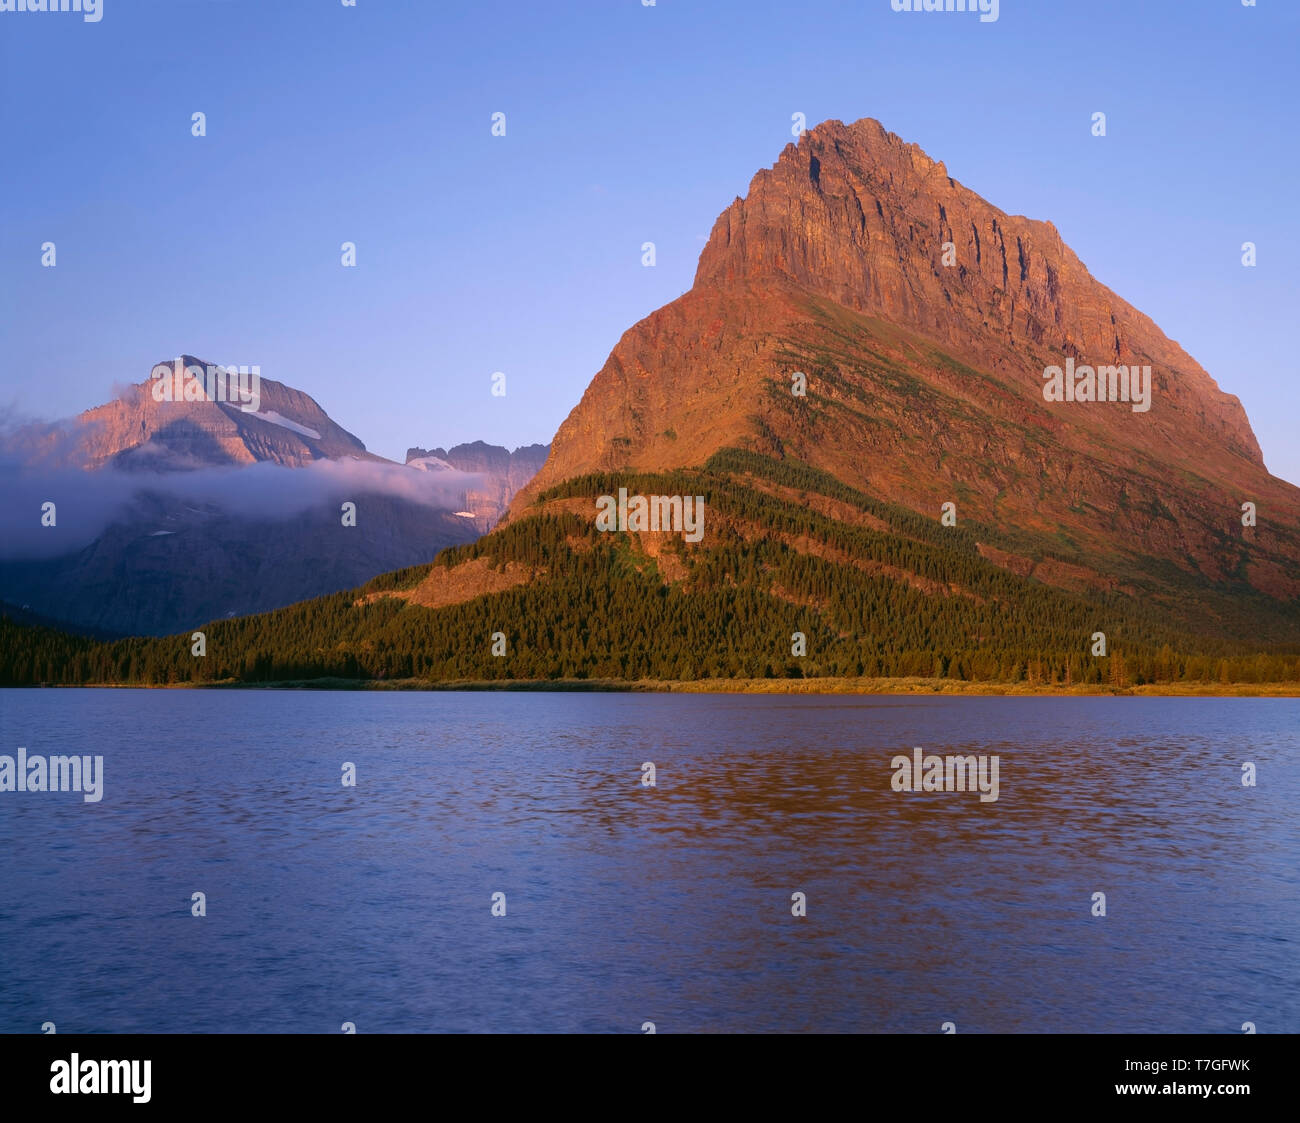 Estados Unidos, Montana, el Parque Nacional de Los Glaciares, la luz del amanecer en Grinnell Point (centro) y el Monte Gould (extremo izquierdo) por encima del lago Swiftcurrent. Foto de stock